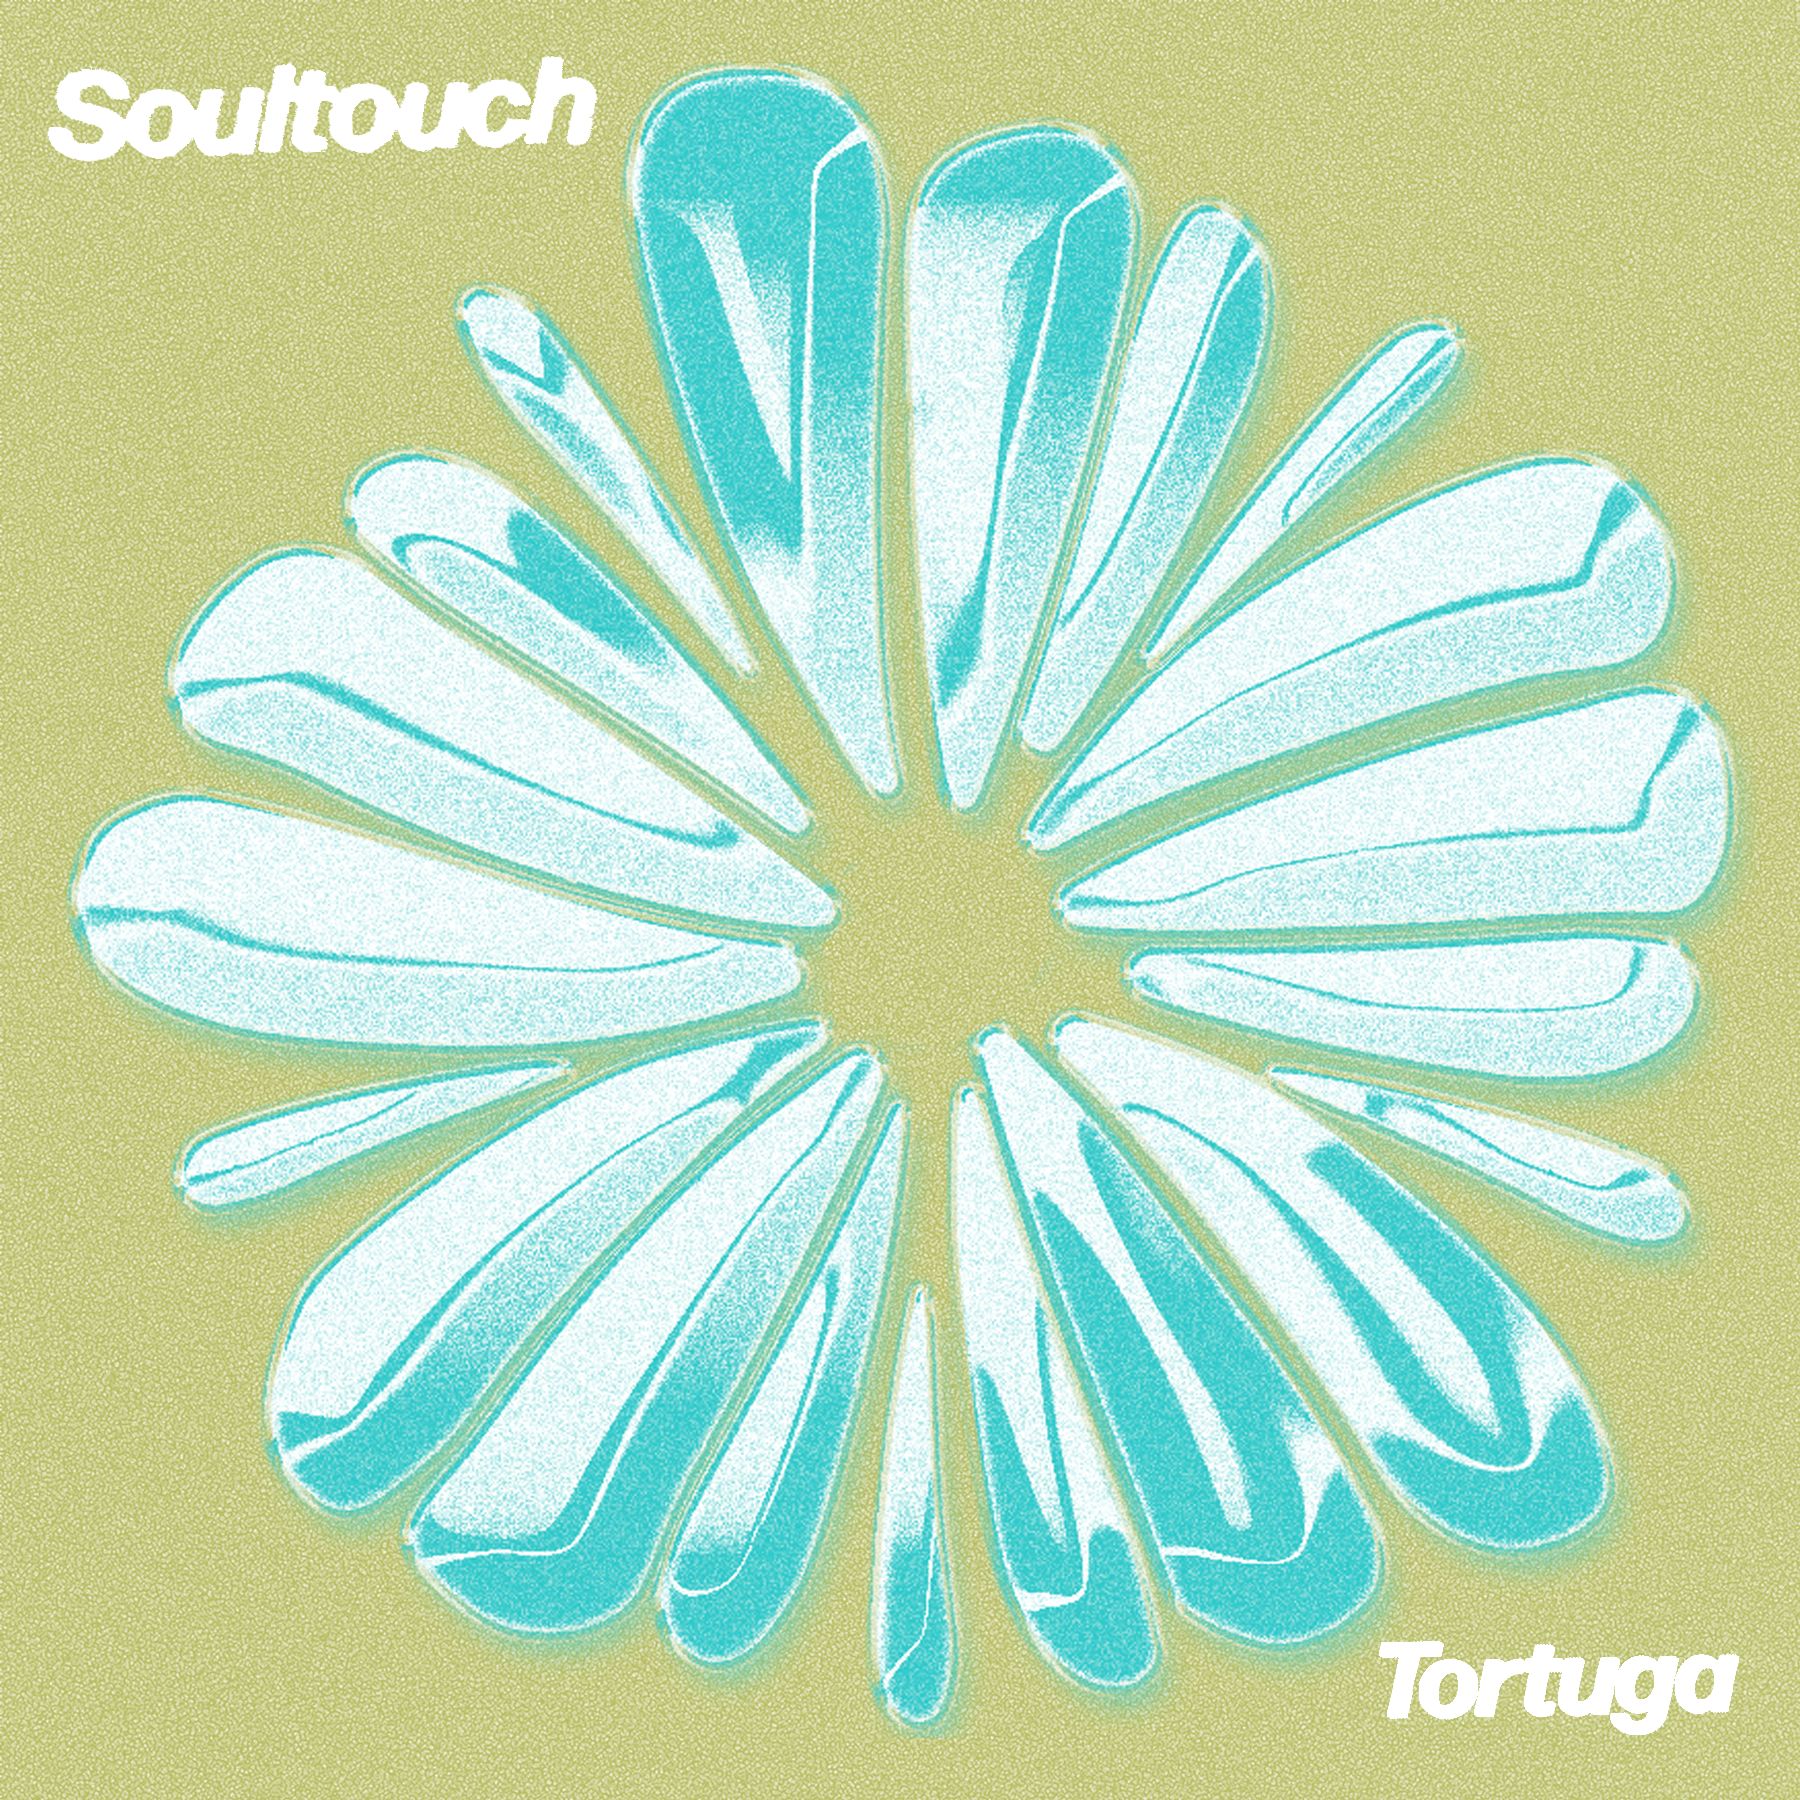 ڊائون لو PREMIERE : Tortuga - Soultouch